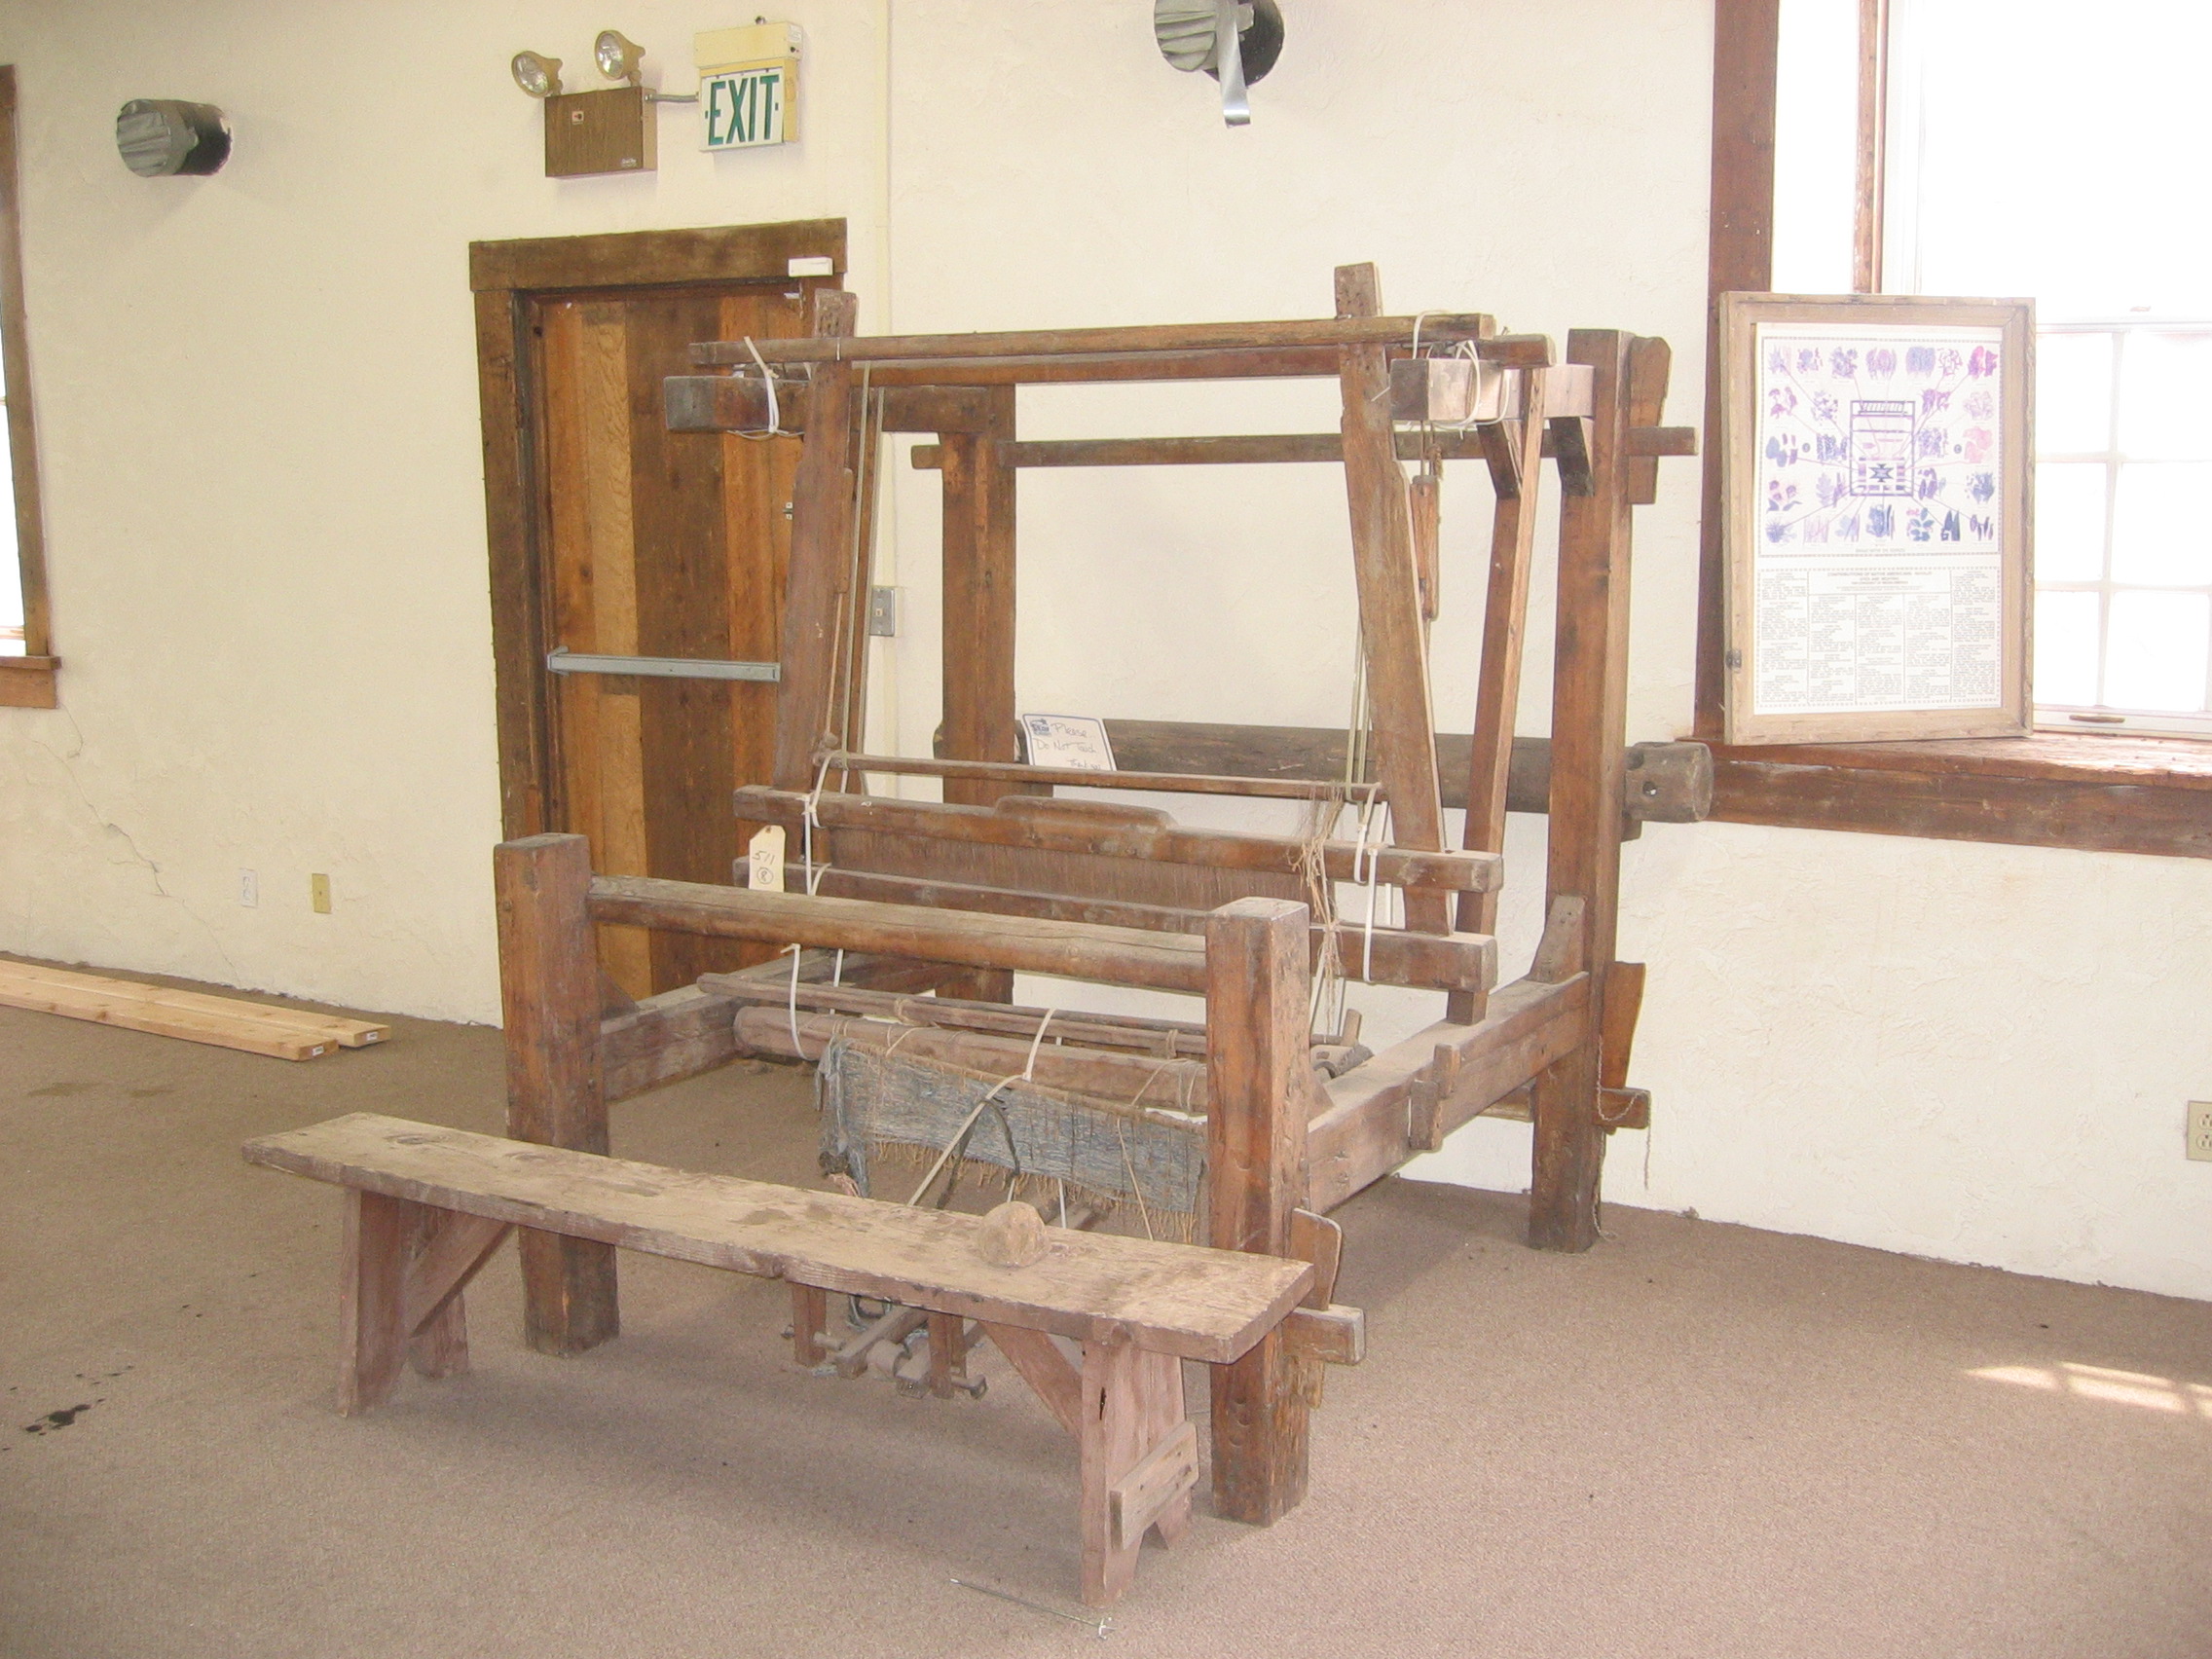 WCHS-00127 An old weaving loom